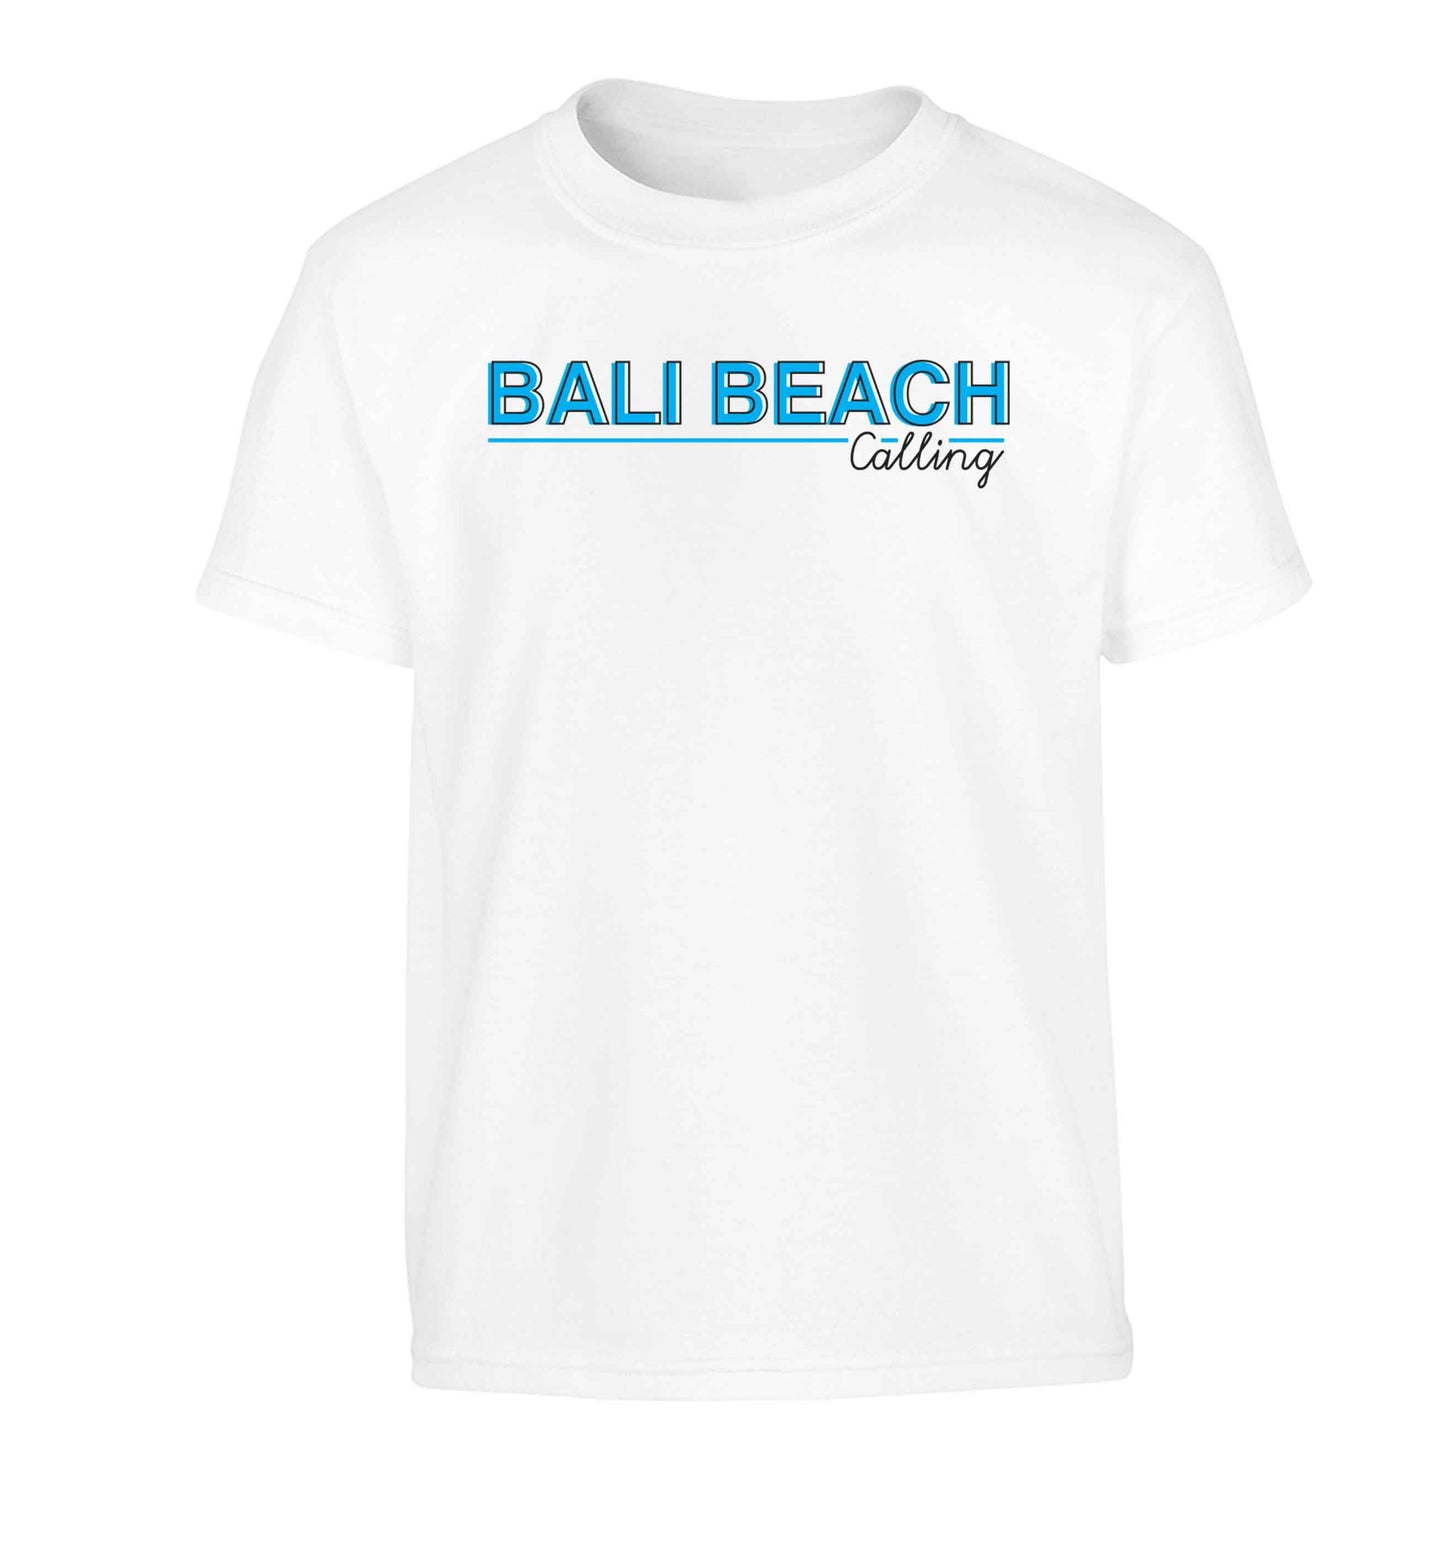 Bali beach calling Children's white Tshirt 12-13 Years